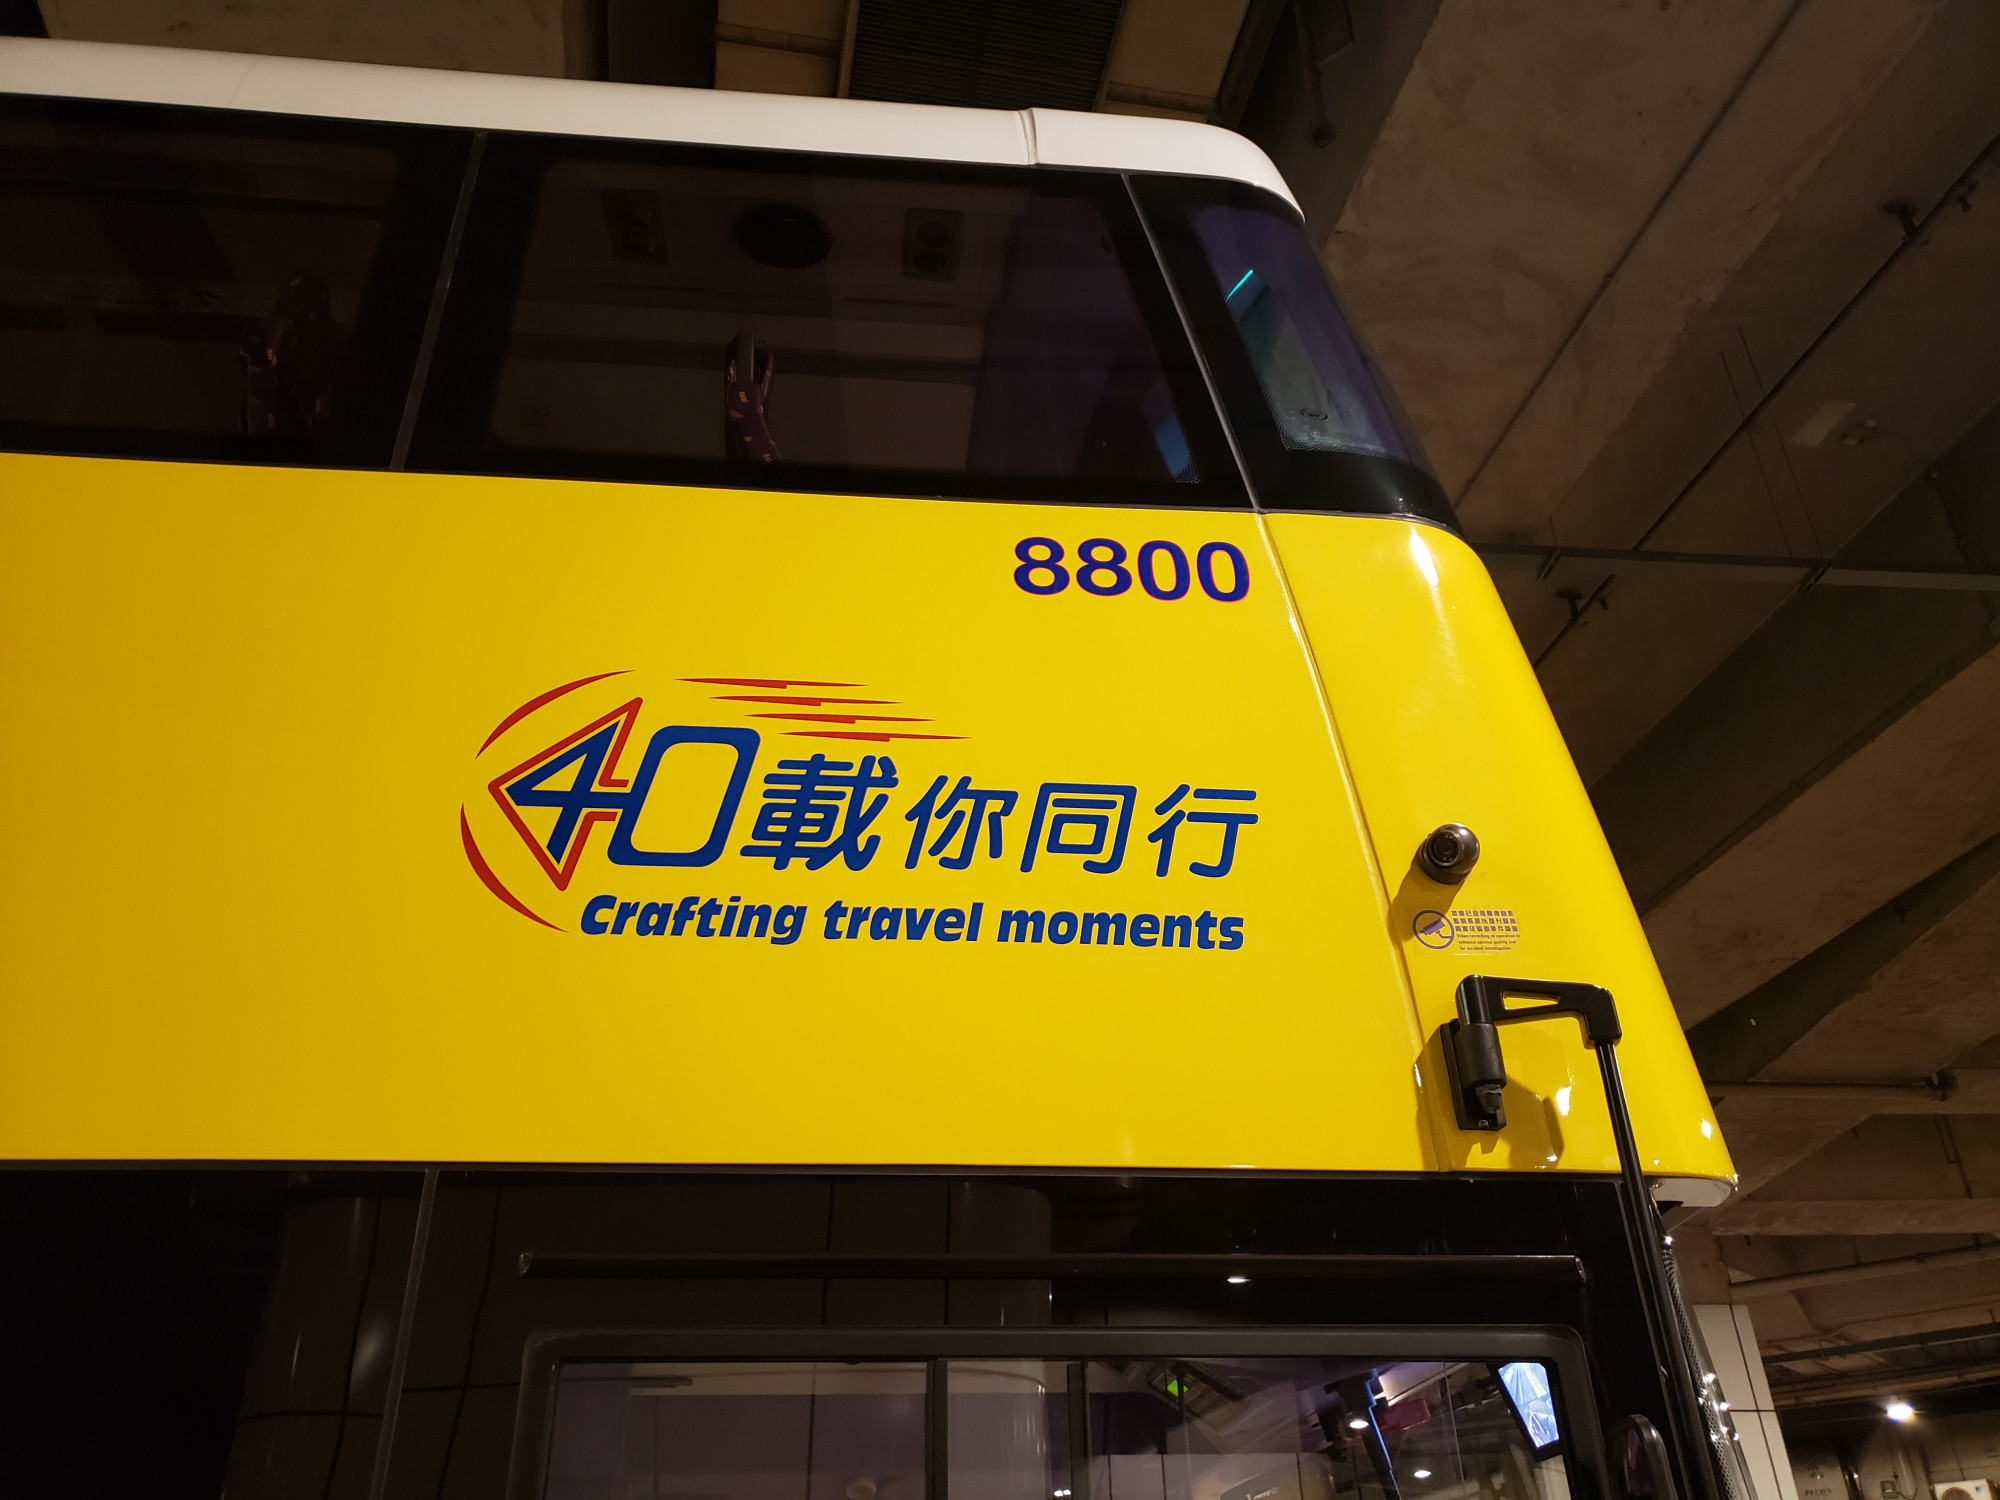 作為城巴首架B8L, 獲選中貼上城巴40週年標誌 